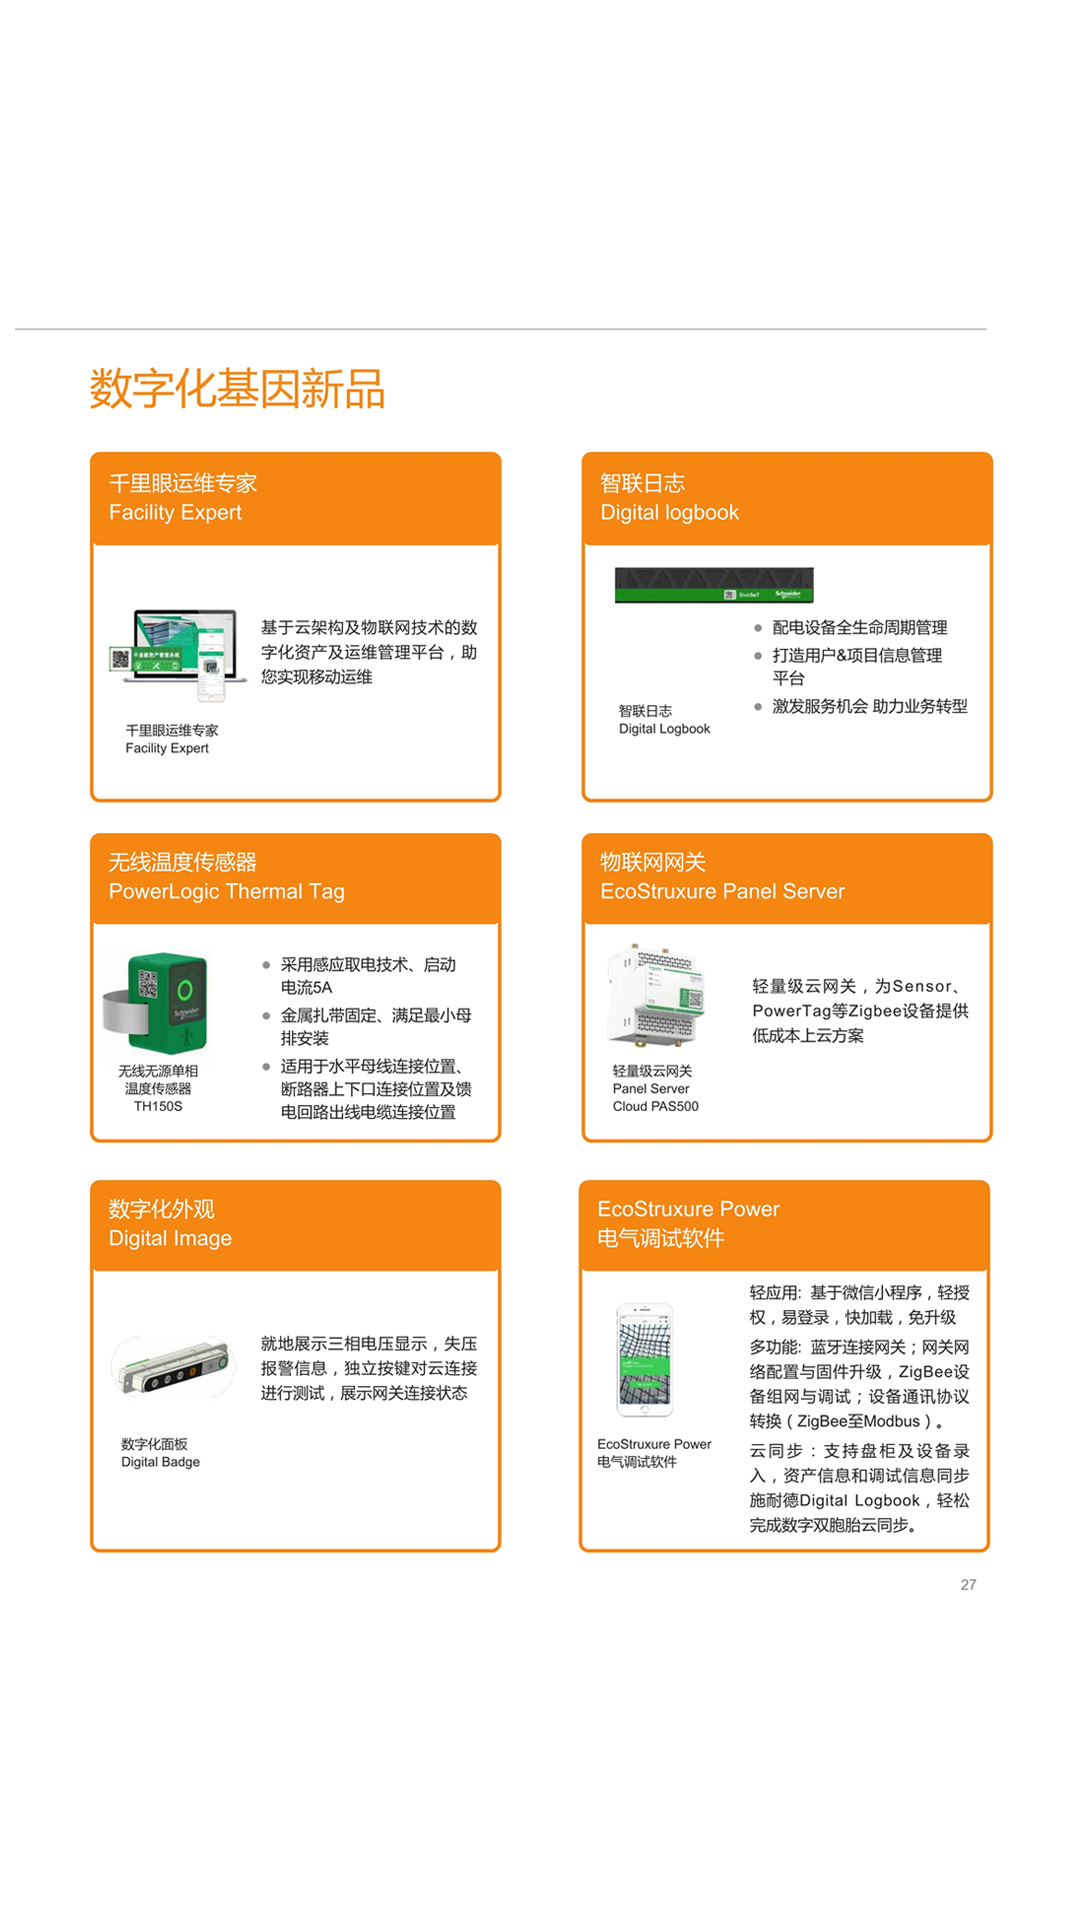 重庆荣昌施耐德智能化blokset低压柜报价及图片,施耐德智能化MVnex550